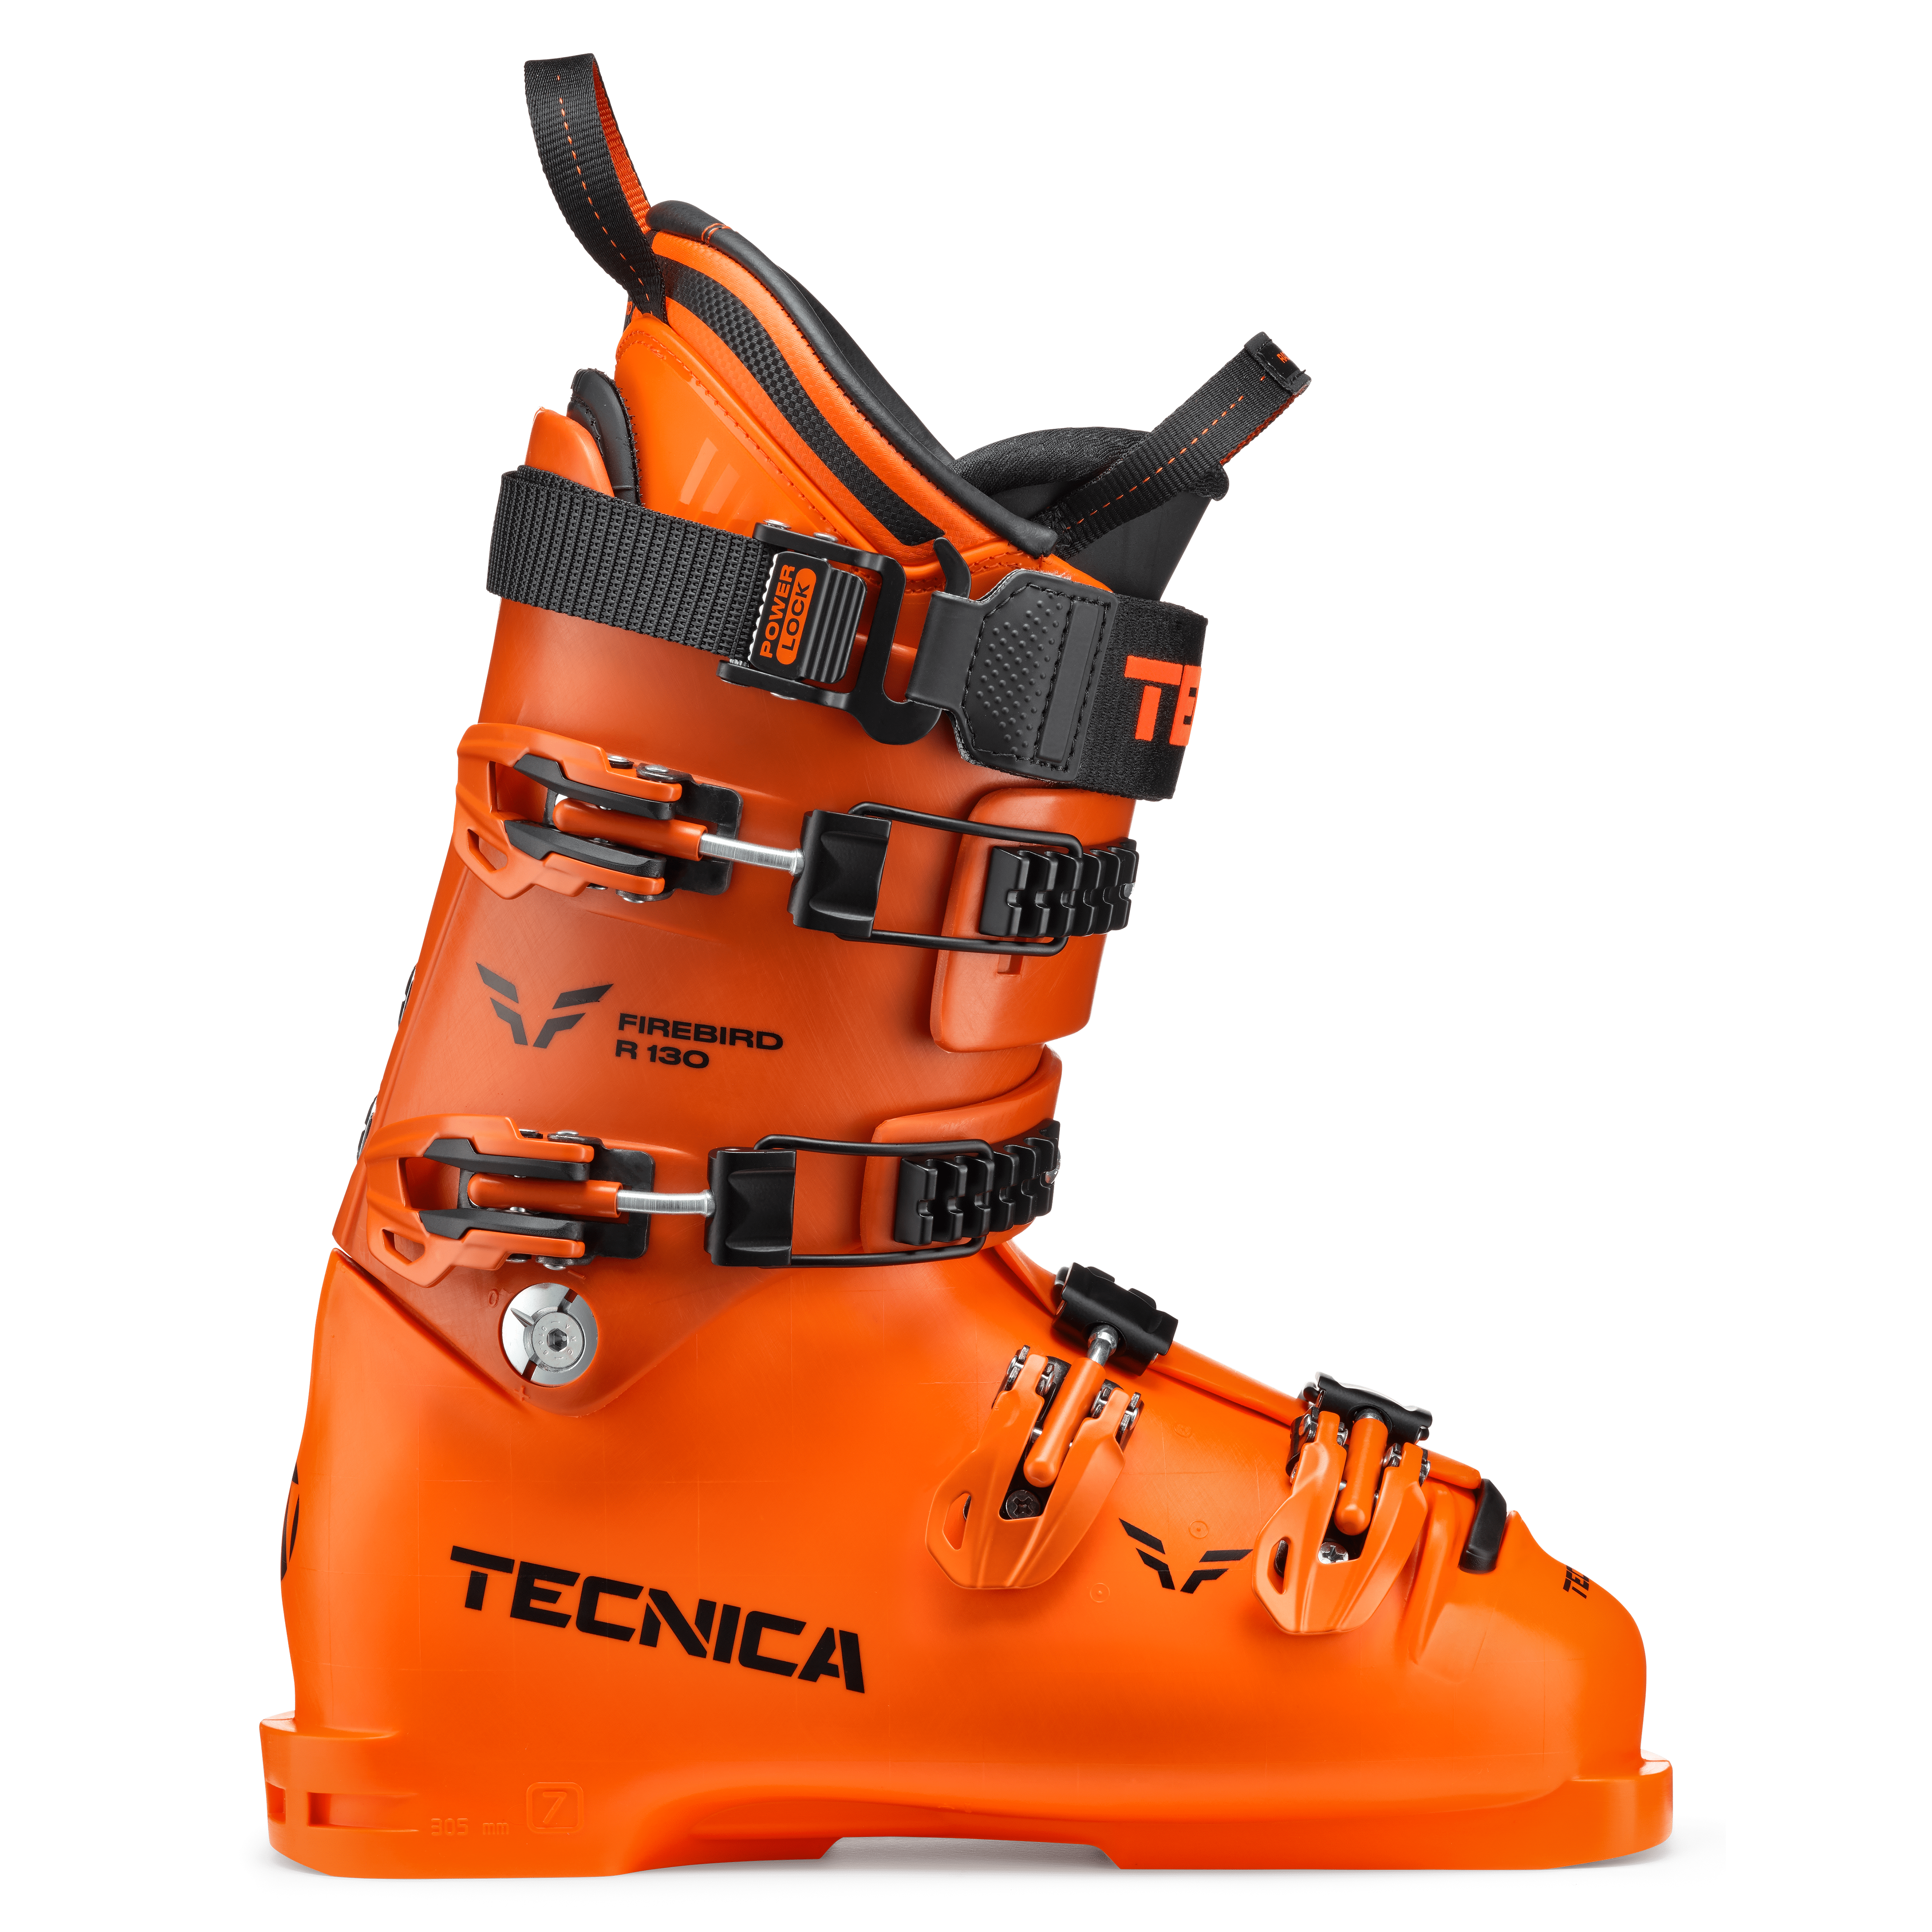 Blizzard Ski, Tecnica Ski Boots, Tecnica Trekking Shoes and Trail 